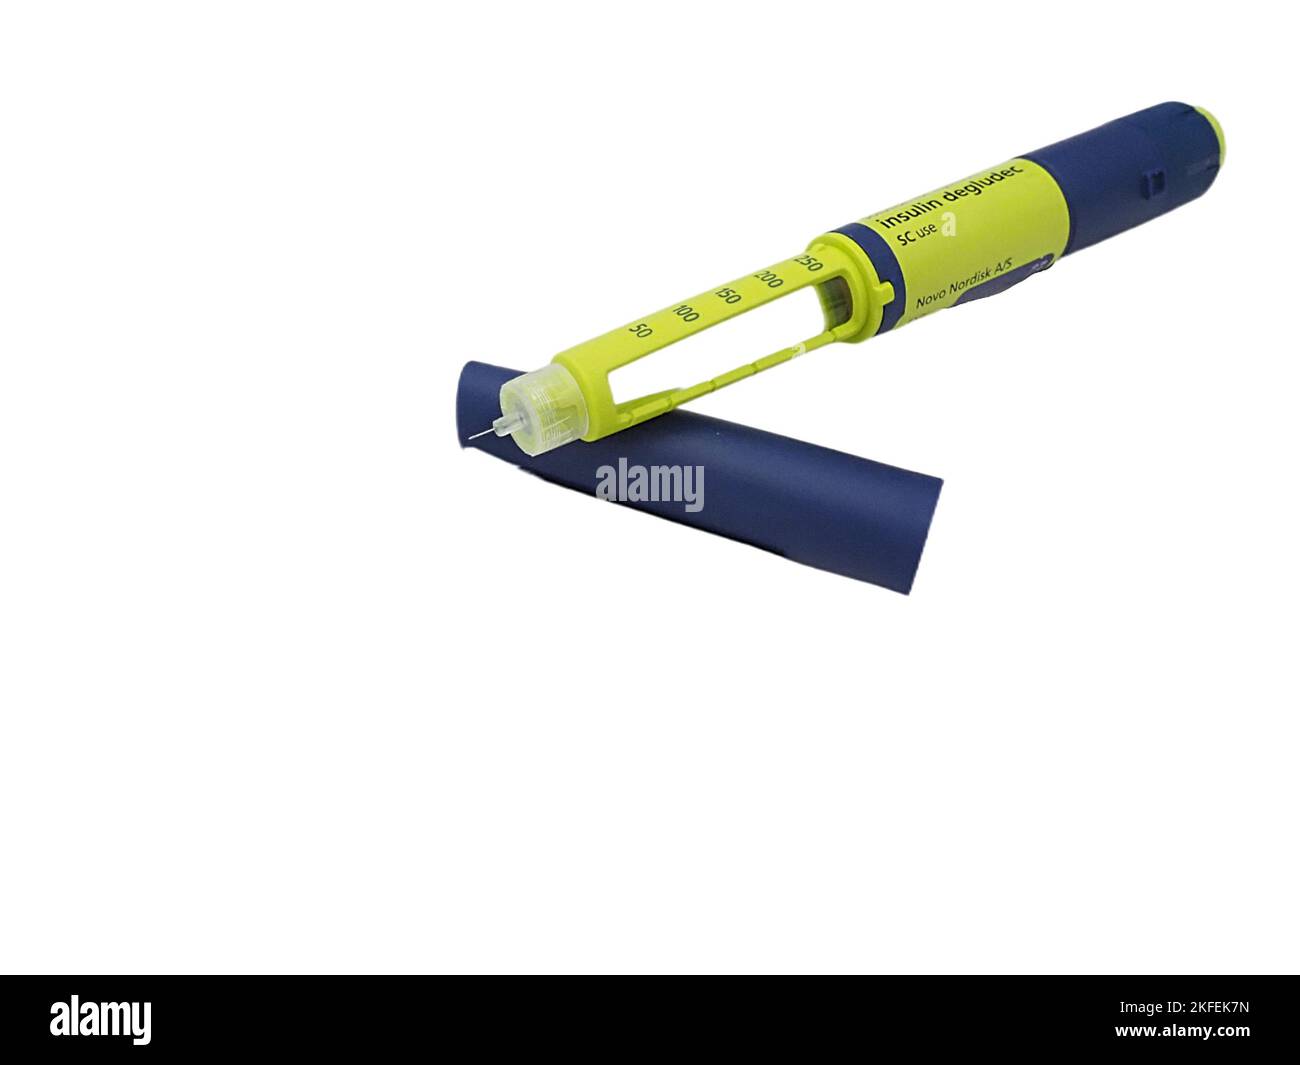 Un stylo à insuline Novo Nordisk bleu-vert isolé sur fond blanc Photo Stock  - Alamy